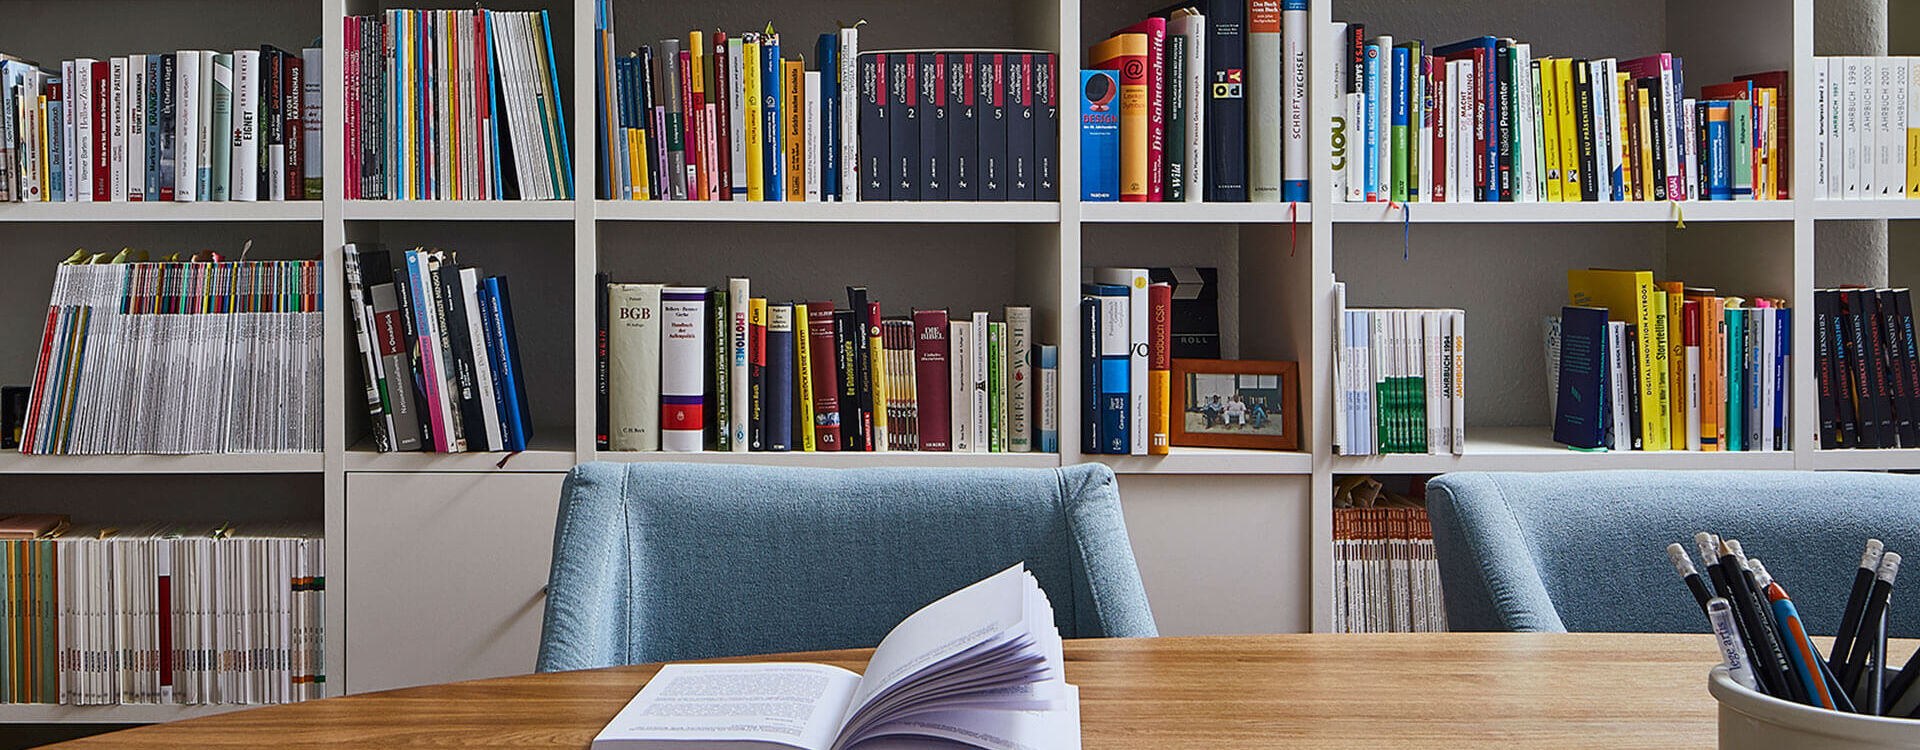 Agentur lege artis - Ein offenes Buch zur Gesundheitskommunikation liegt auf einem Tisch vor einem Bücherregal